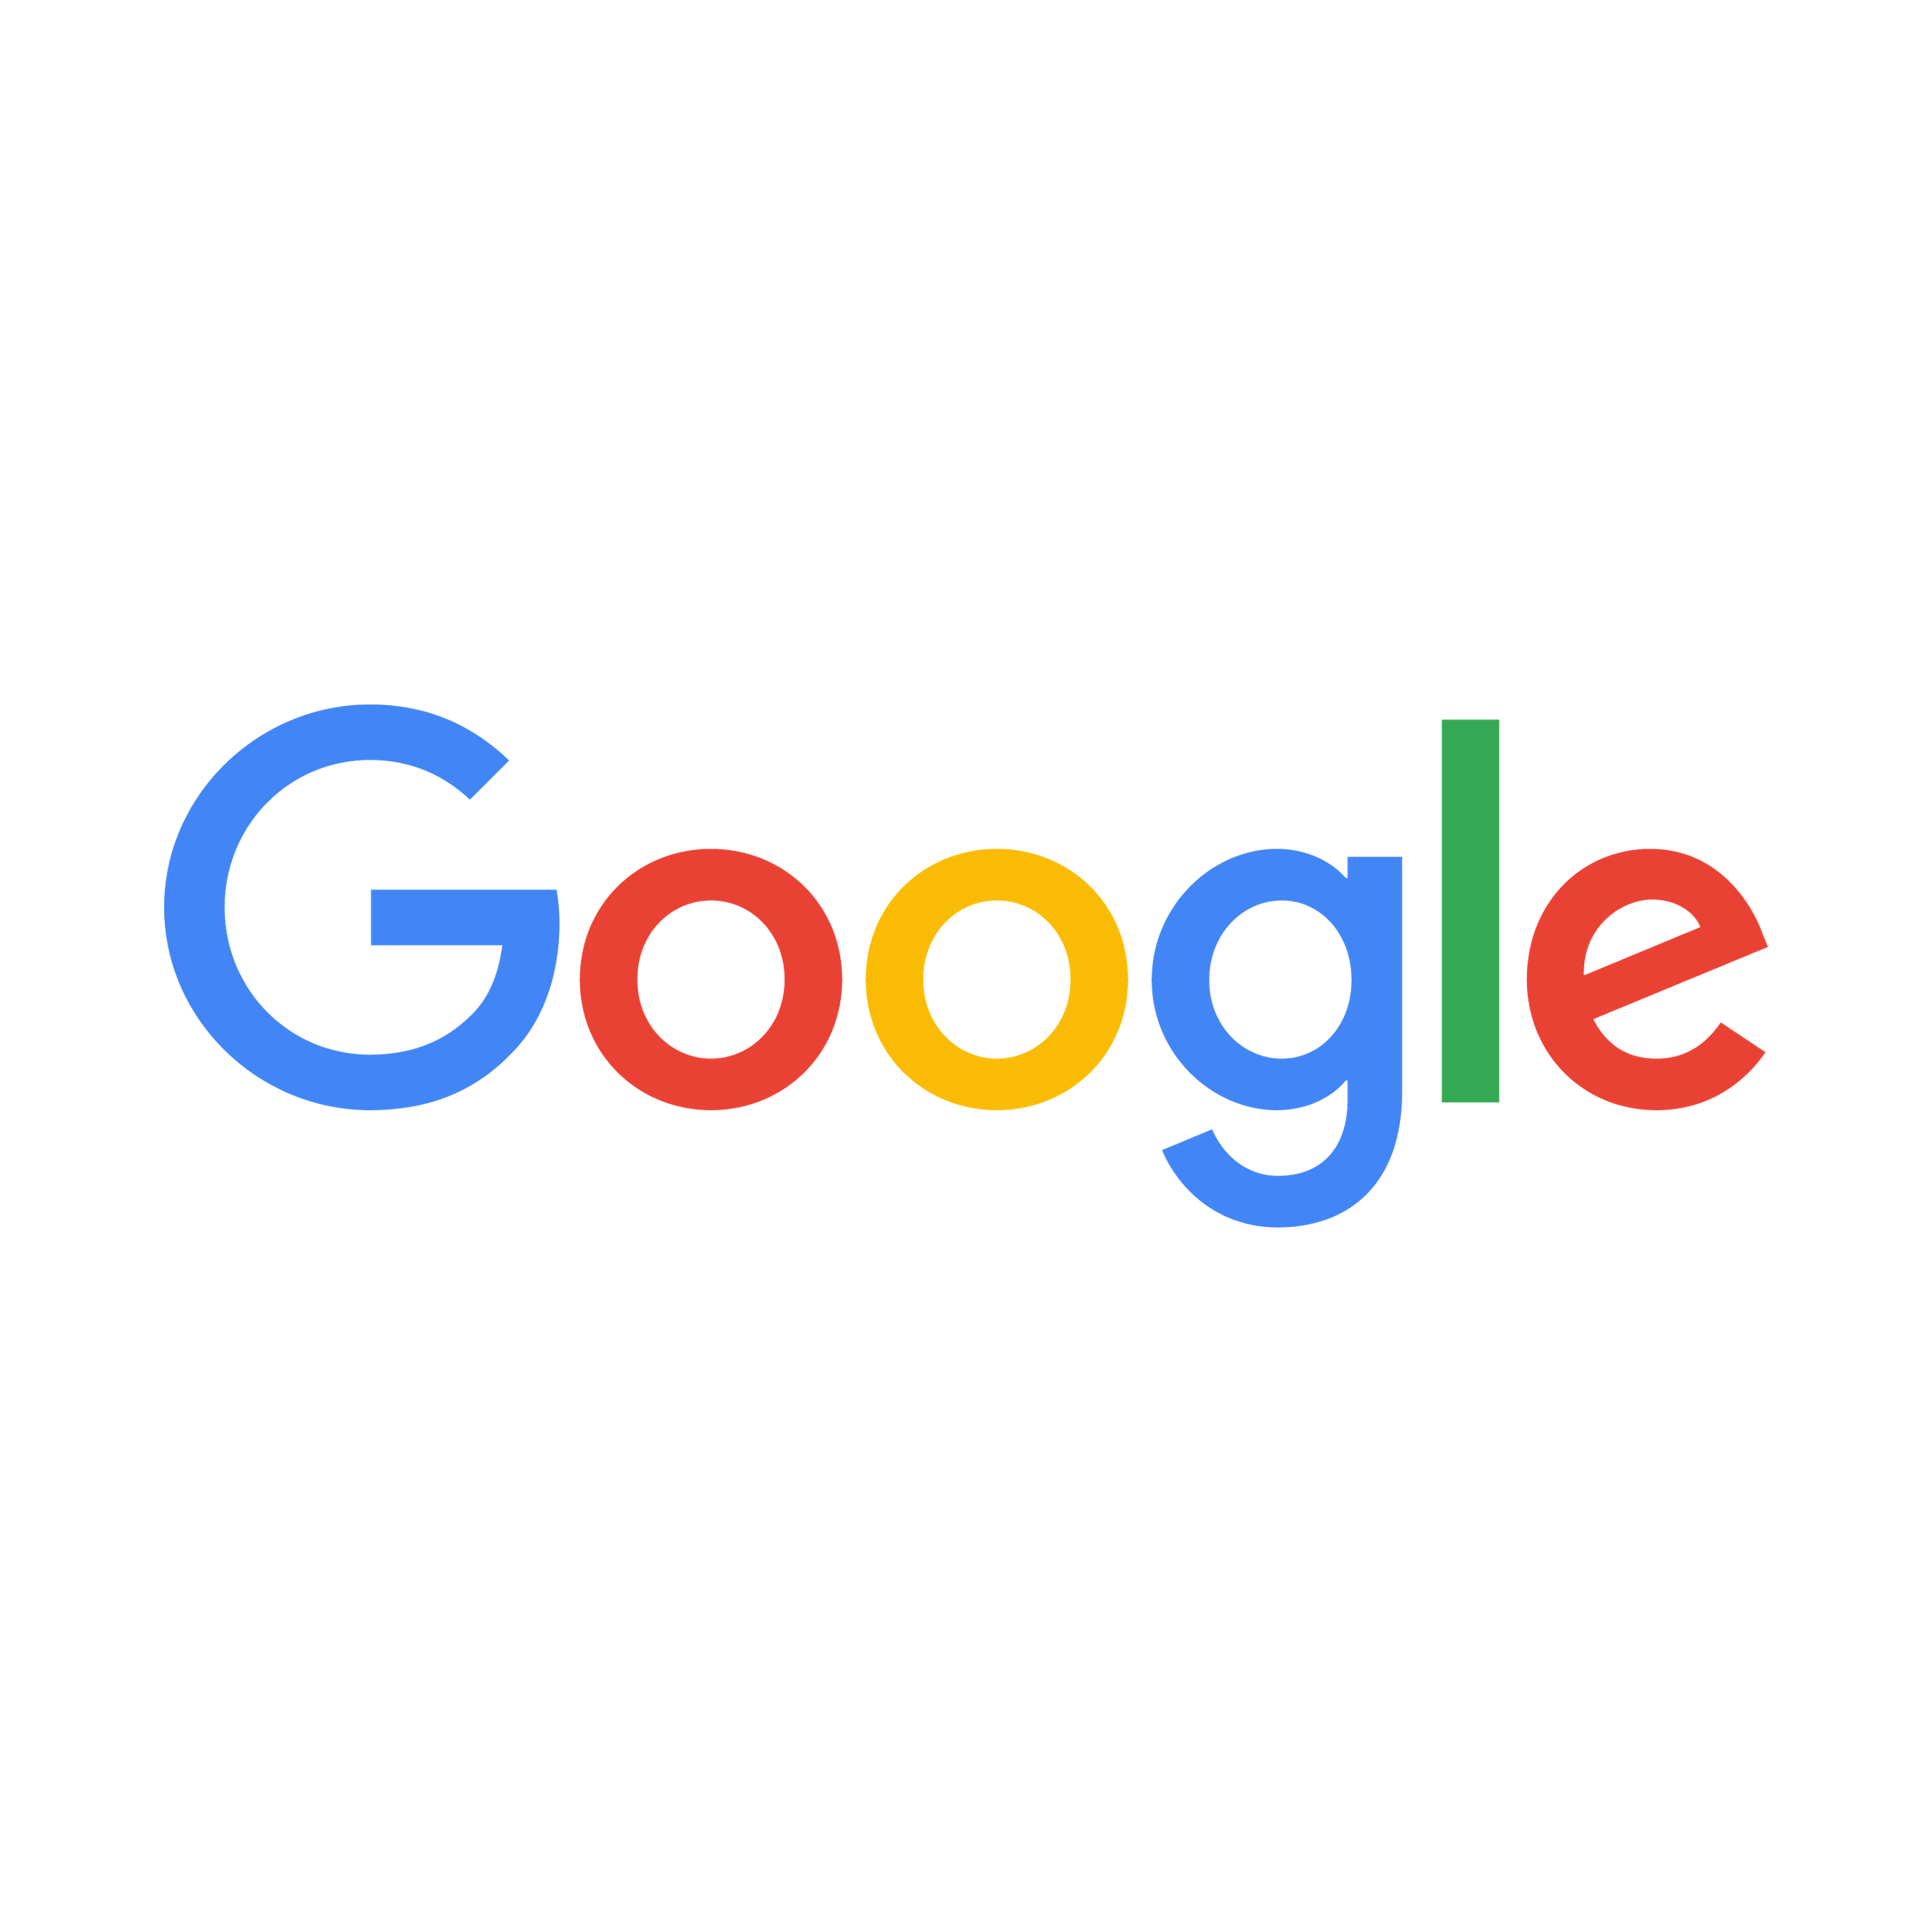 Google | Girlguiding - Google.com Logo